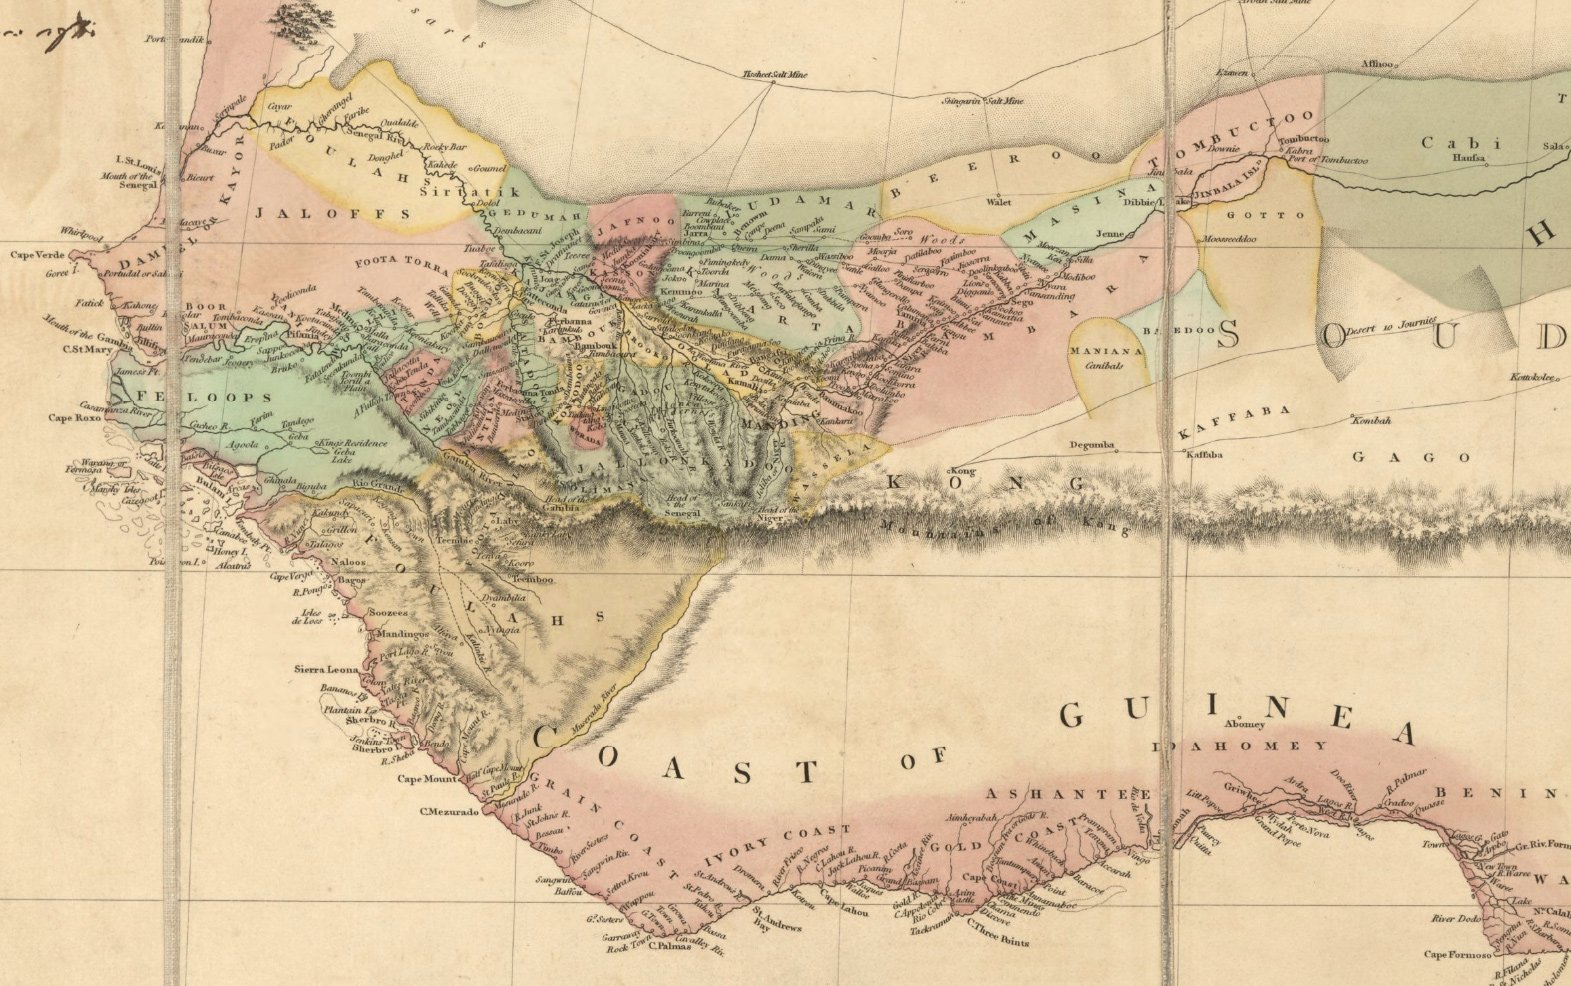 L'Afrique de l'Ouest représentée sur la carte « A New Map of Africa » (1802) d'Aaron Arrowsmith où les monts de Kong apparaissent.